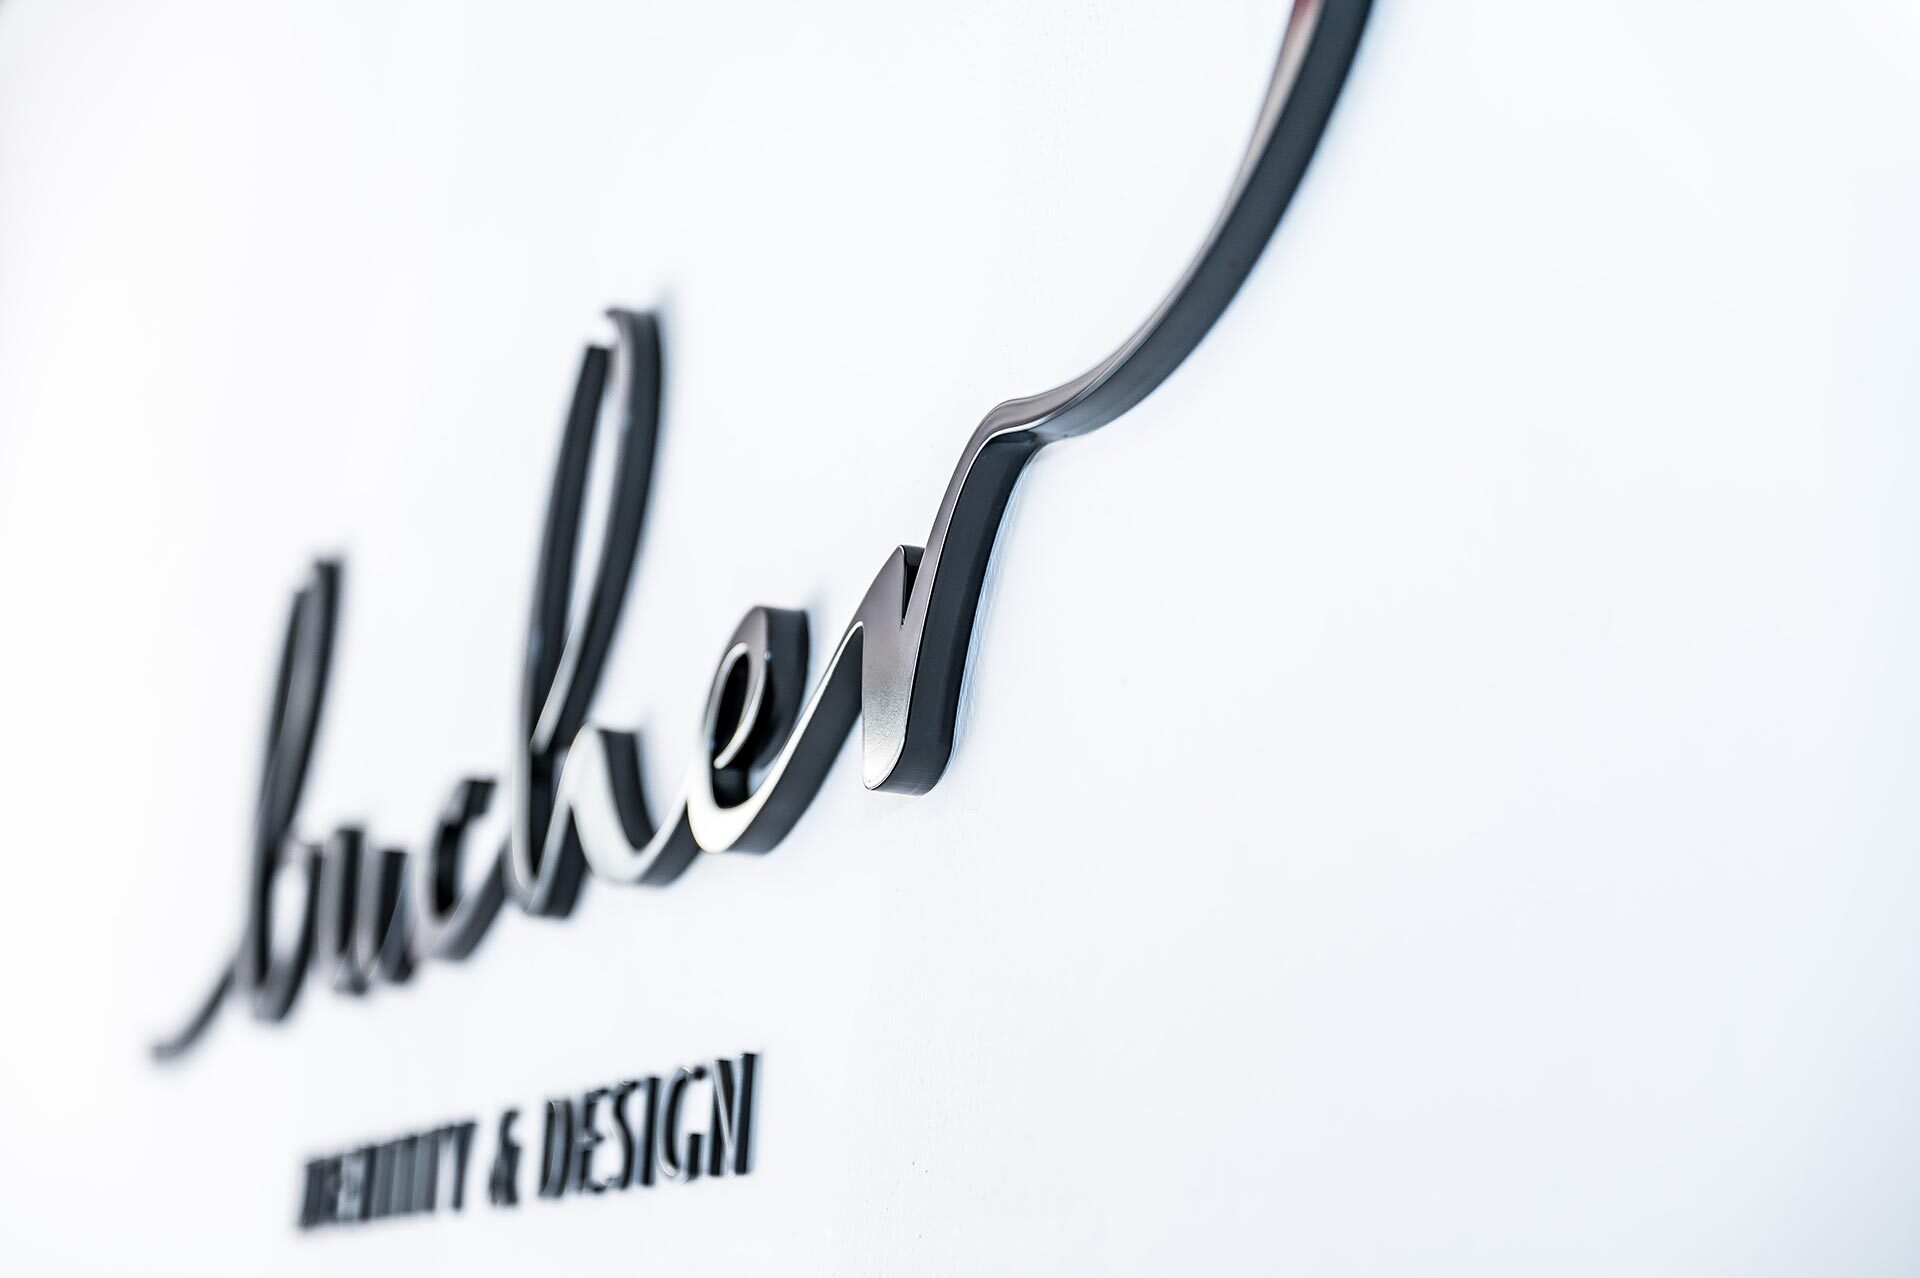 Kreativagentur Bucher Identity & Design AG 